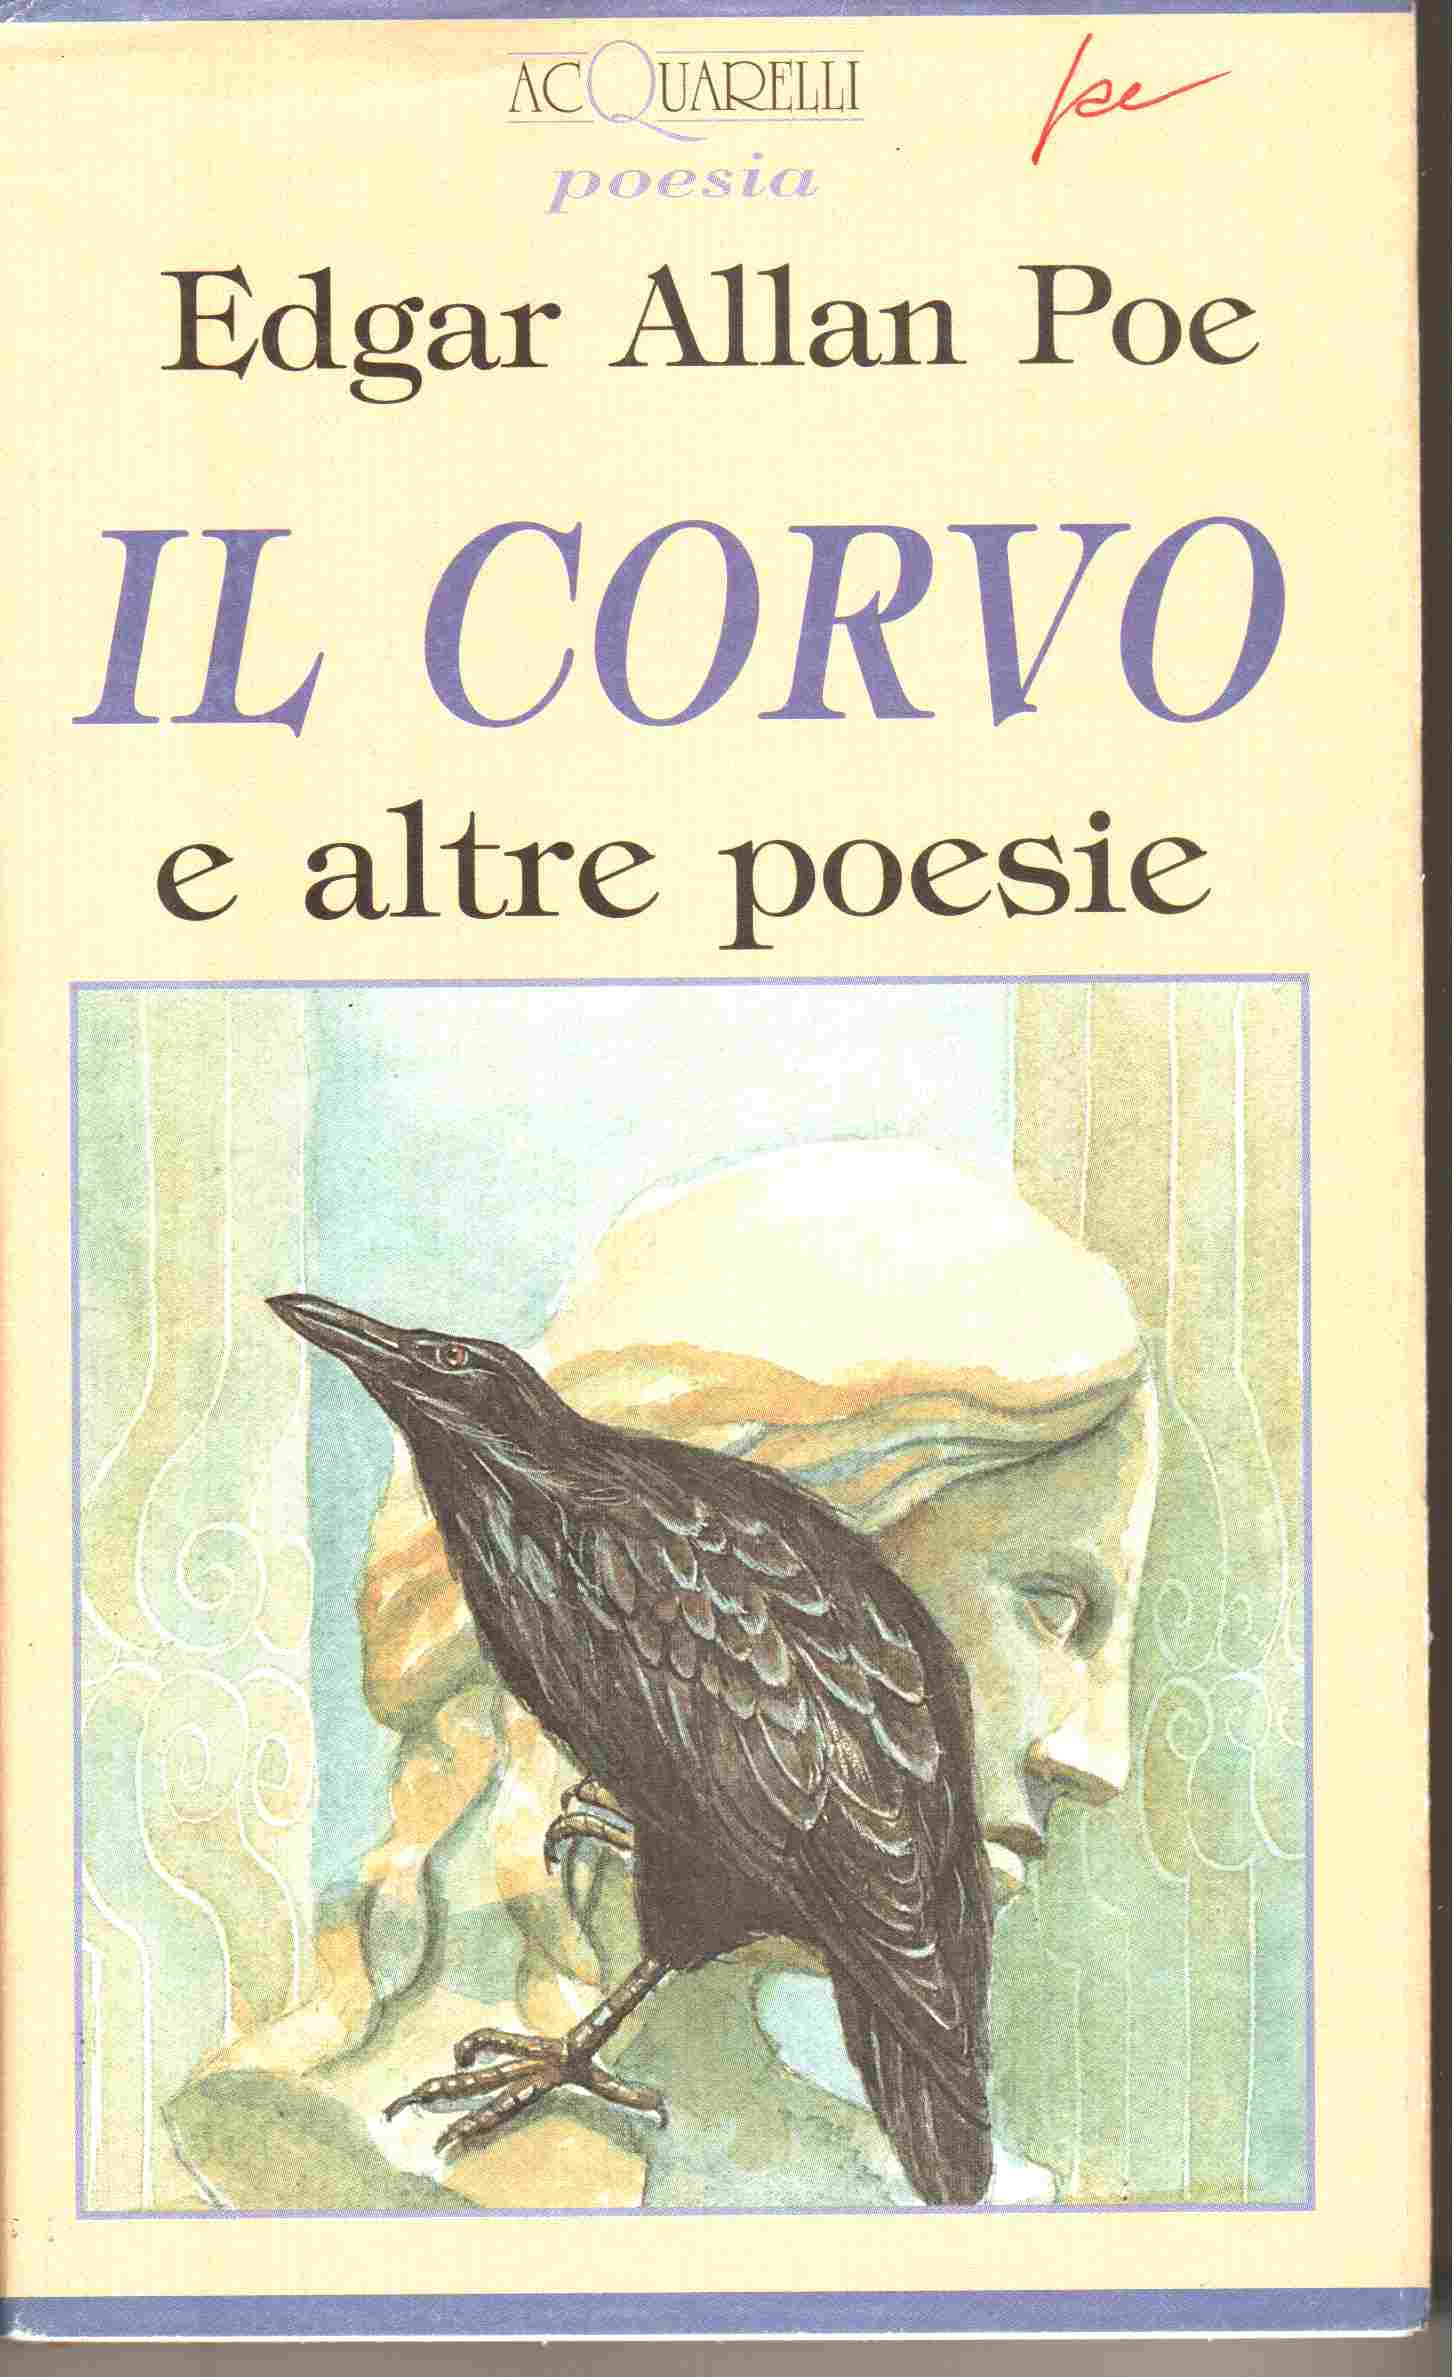 More about Il corvo e altre poesie